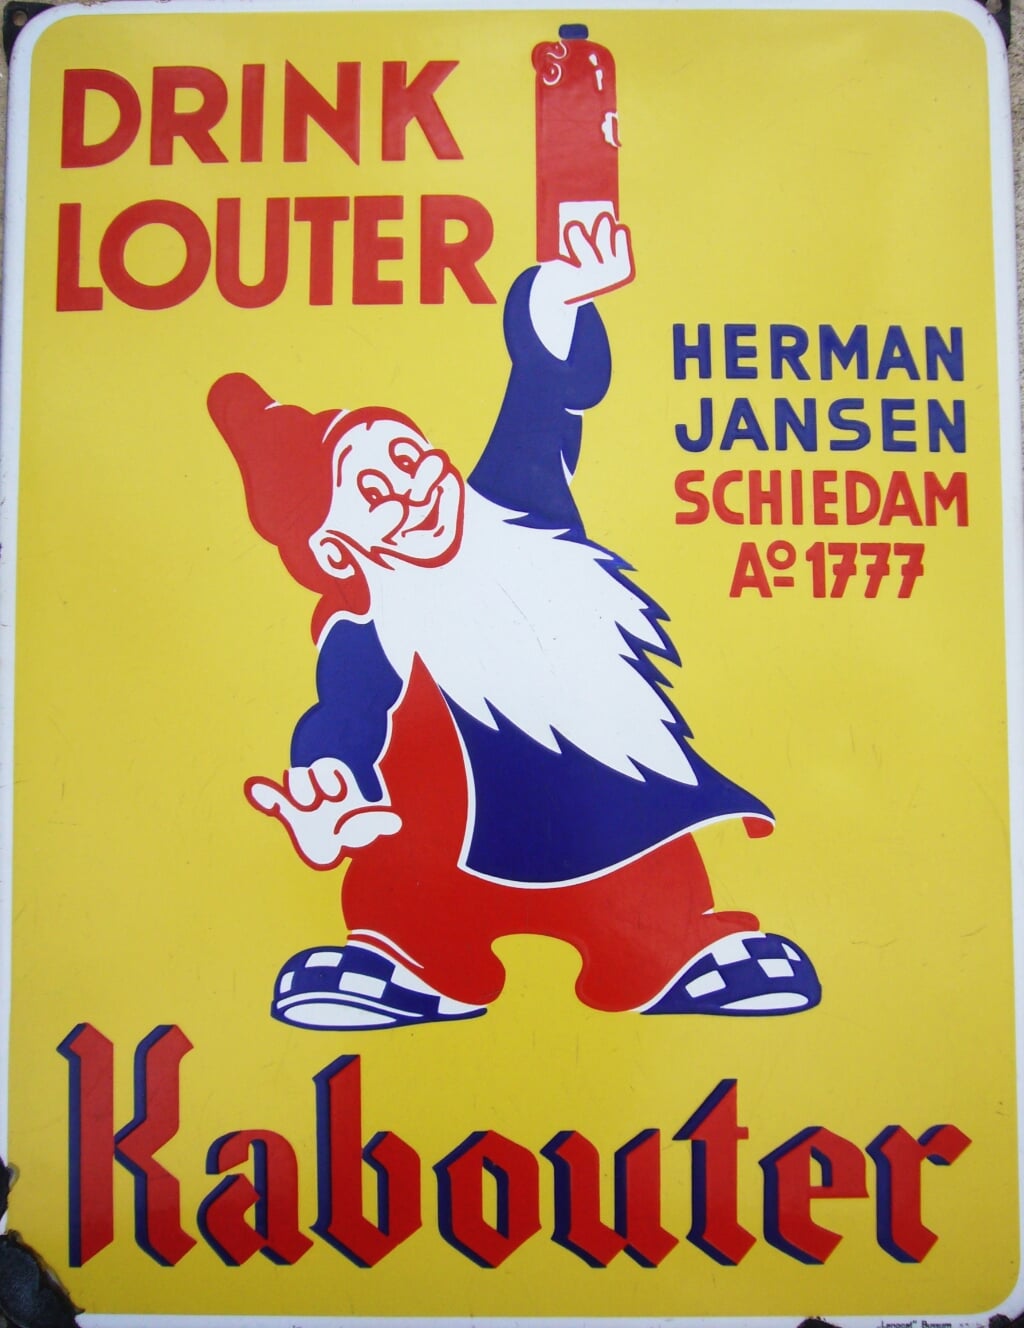 Een van de door Erkens verkochte jenevermerken was ‘Kabouter’ van Herman Jansen uit Schiedam.